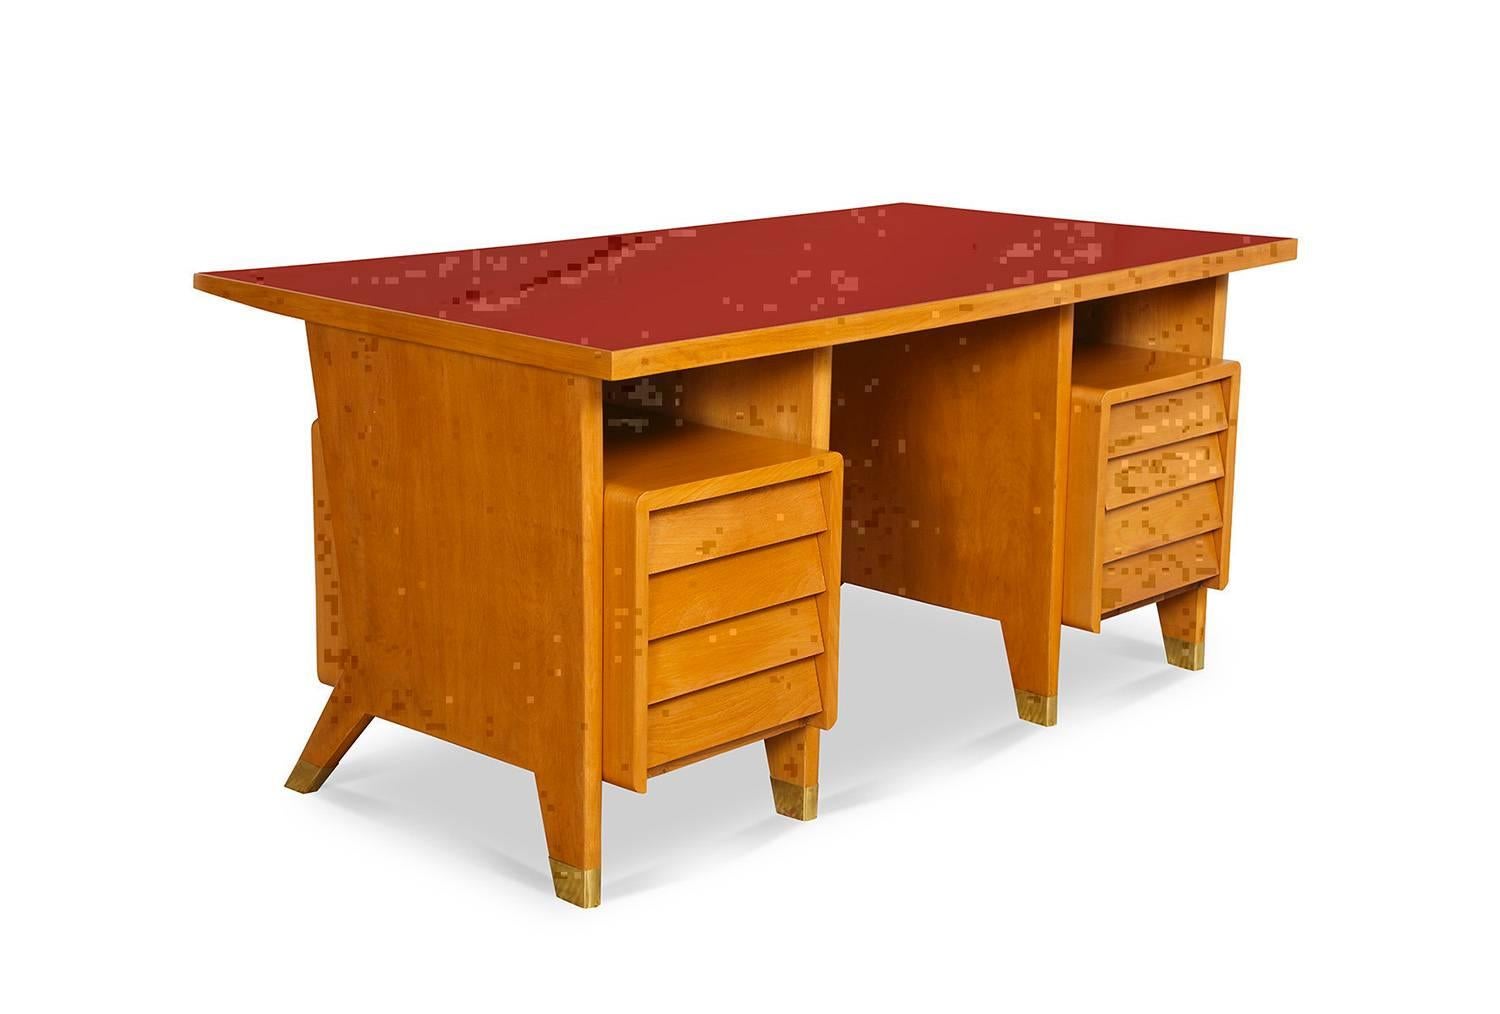  Schreibtisch mit acht Schubladen von Gio Ponti.  Aus einer kleinen Auflage für die Verwaltung in Forli, Italien. Schreibtisch aus blondem Holz mit roter Linoleumplatte, geschindelten Schubladenflächen und Messingmanschetten an den Füßen. Eine